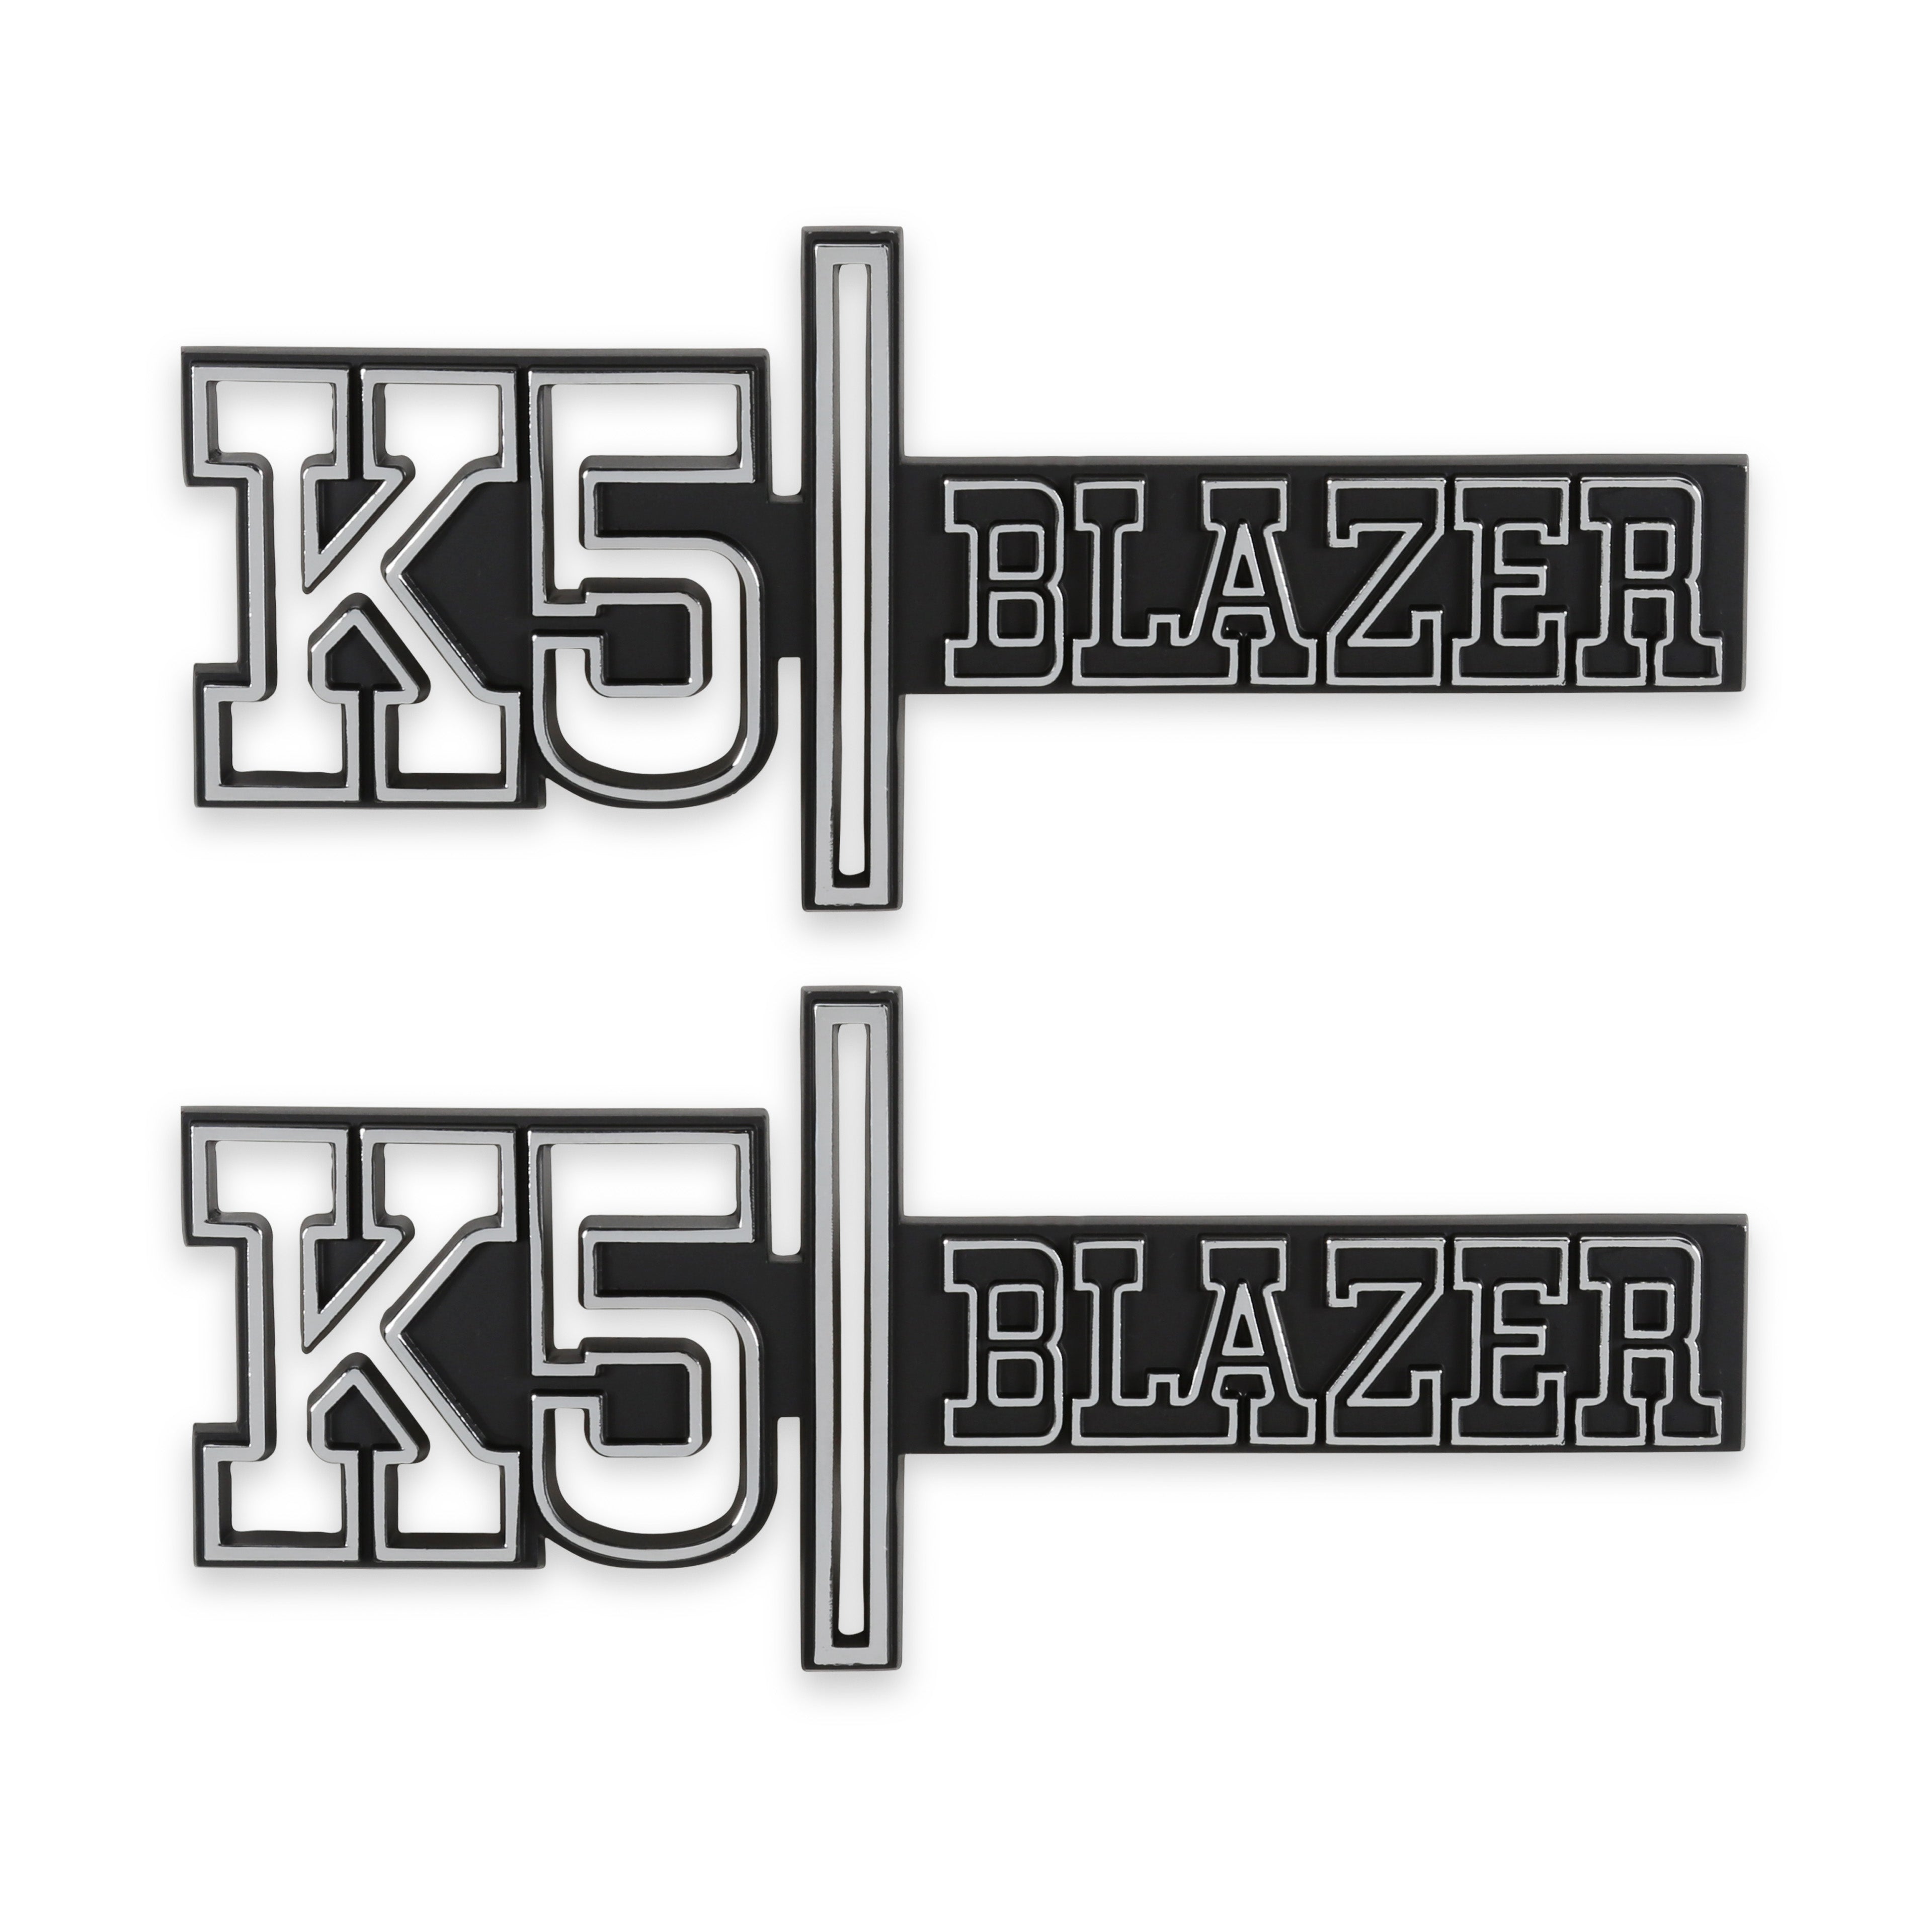 BROTHERS K5 Fender Badge Pair - Blazer 4WD pn 04-547